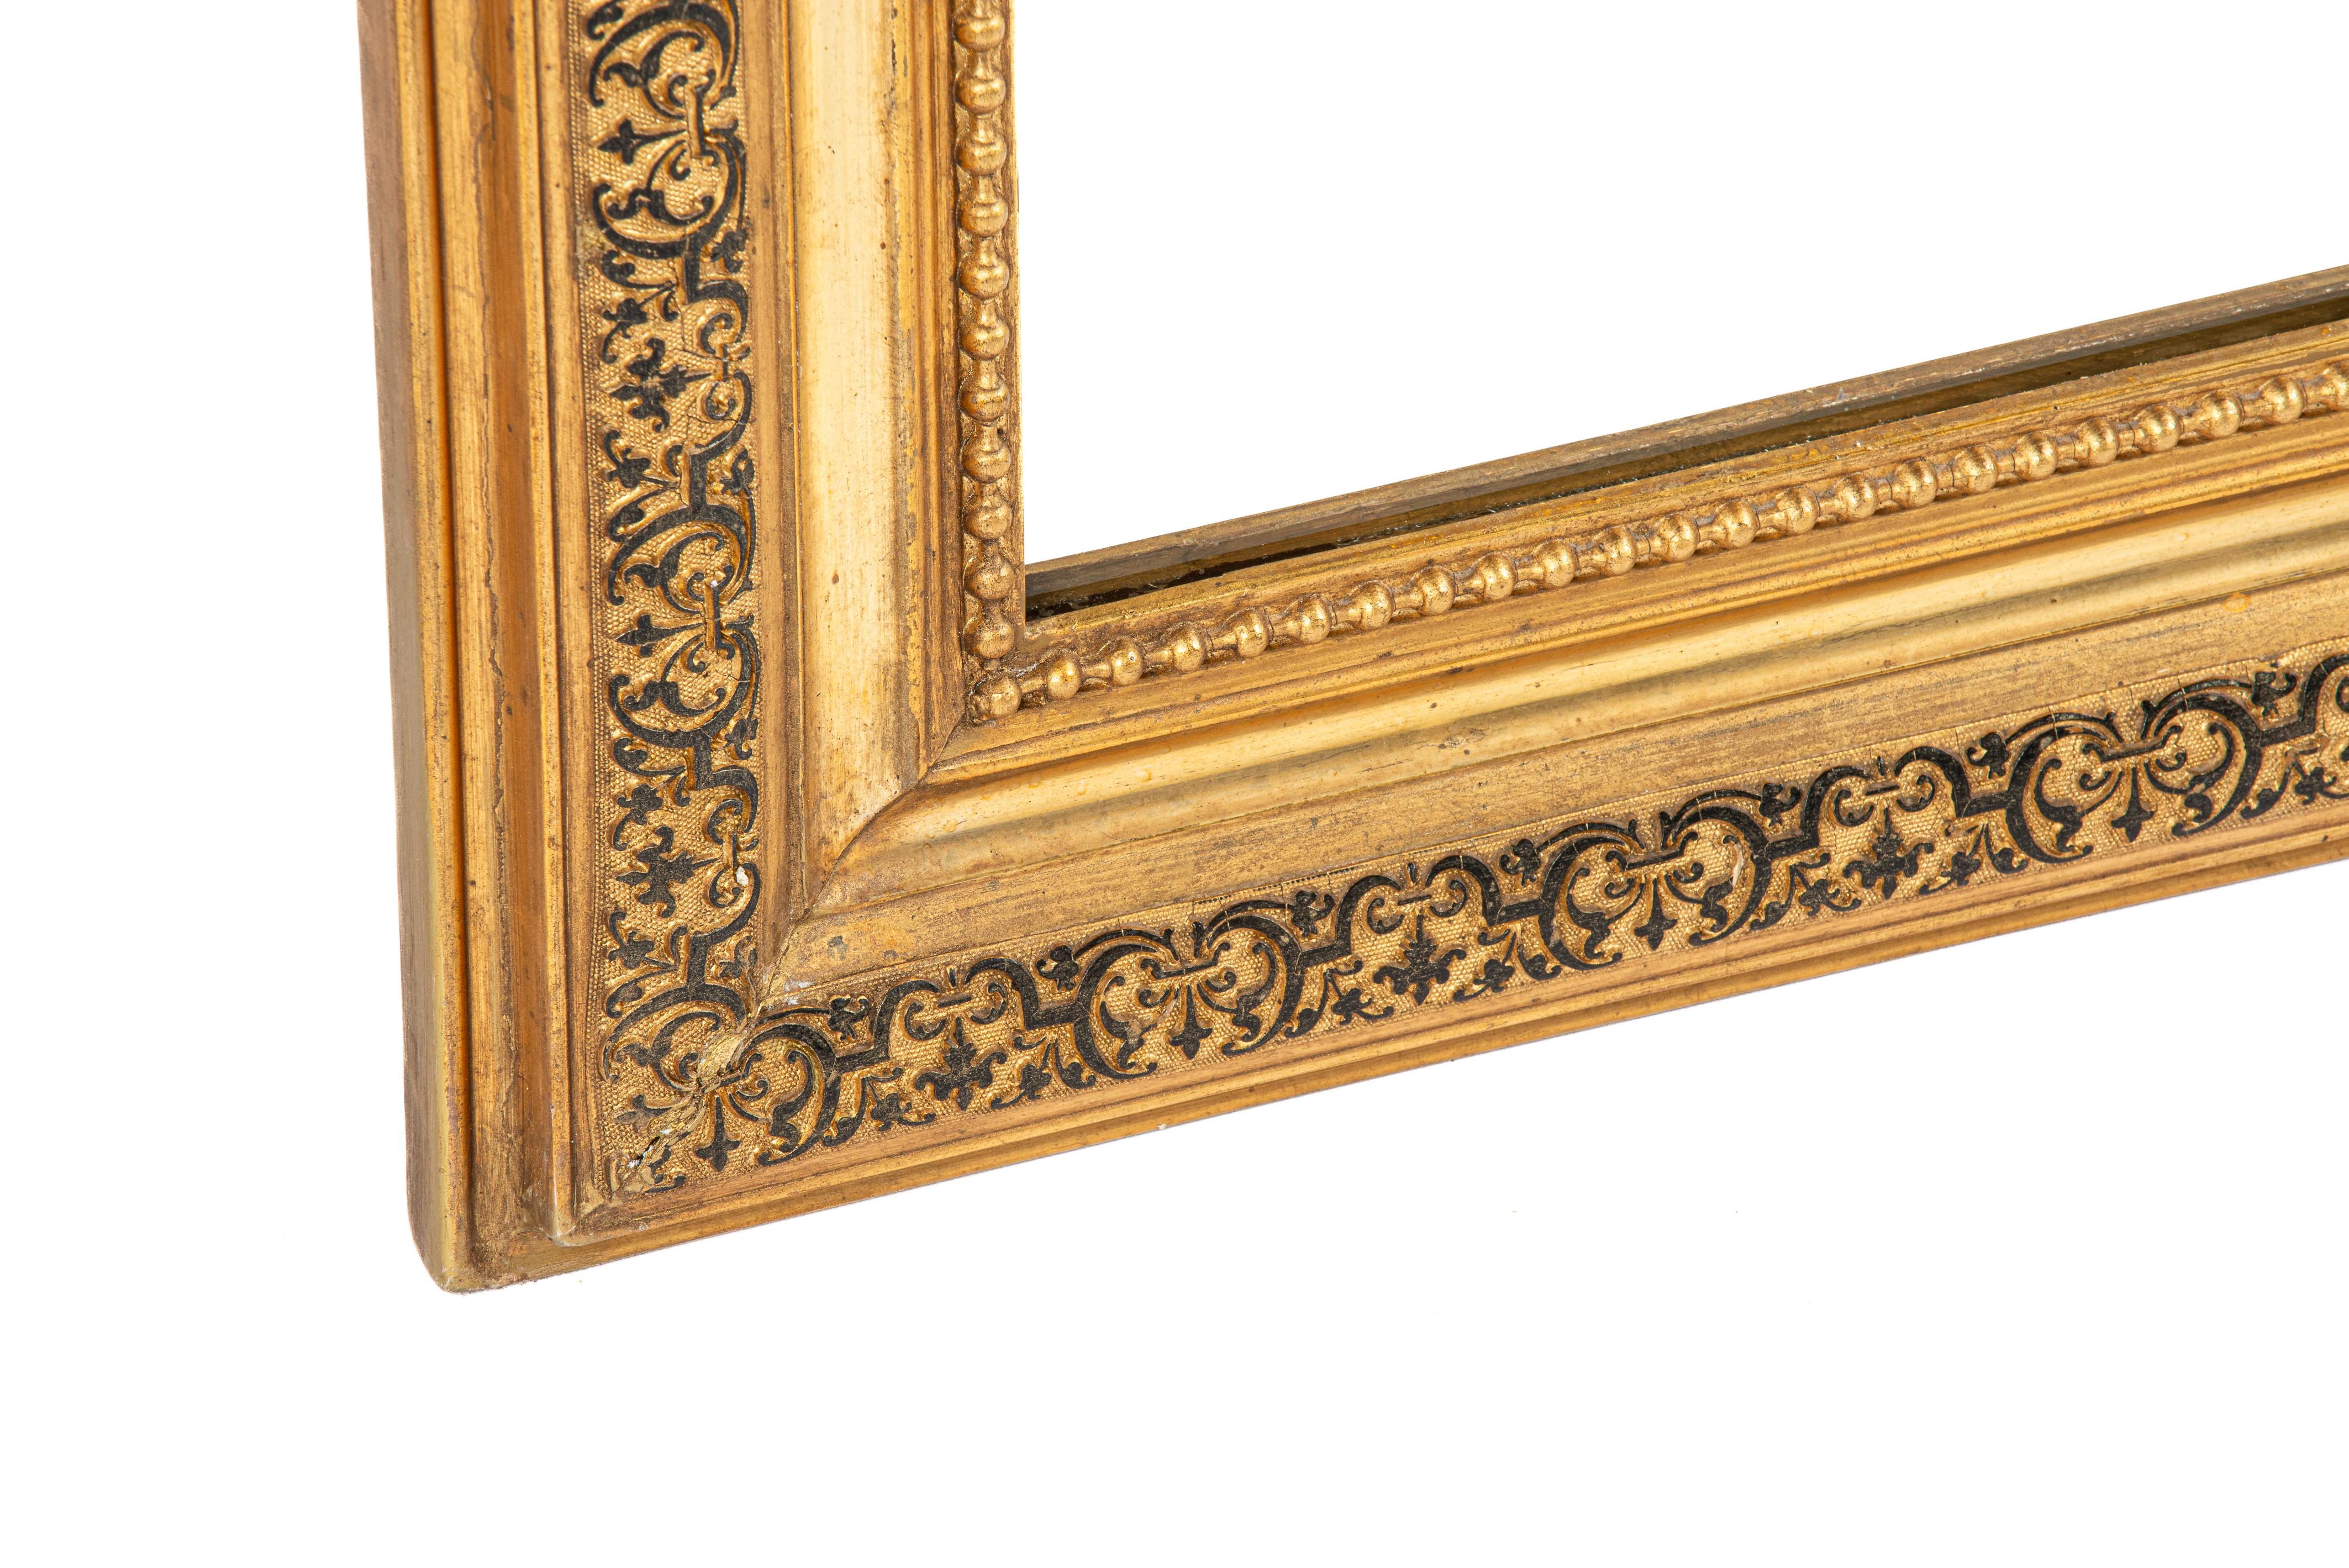 Nous vous présentons ici un exquis miroir Louis Philippe ancien, orné de l'artisanat et de l'élégance français du 19e siècle. Originaire du sud de la France et datant d'environ 1880, ce miroir présente les caractéristiques distinctes du style Louis